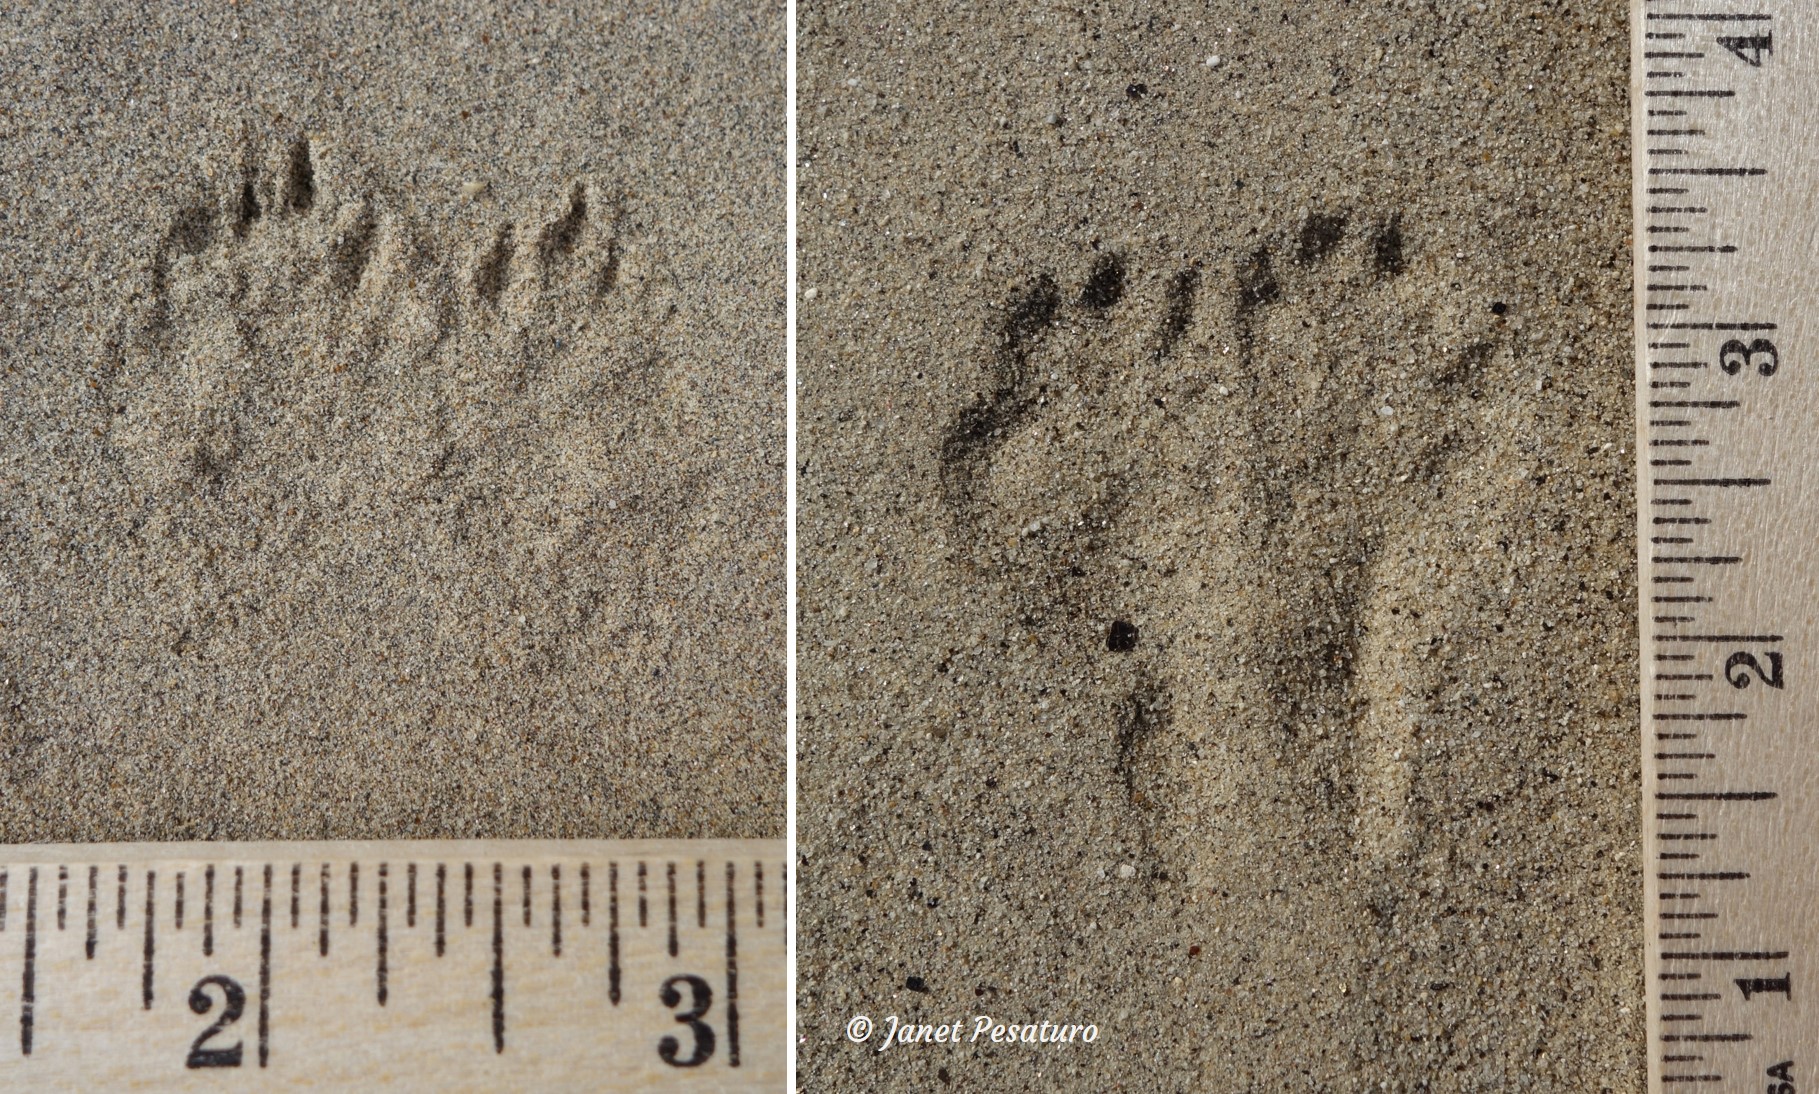 kangaroo rat tracks, one pair without heel registering and the other pair with heel registering.